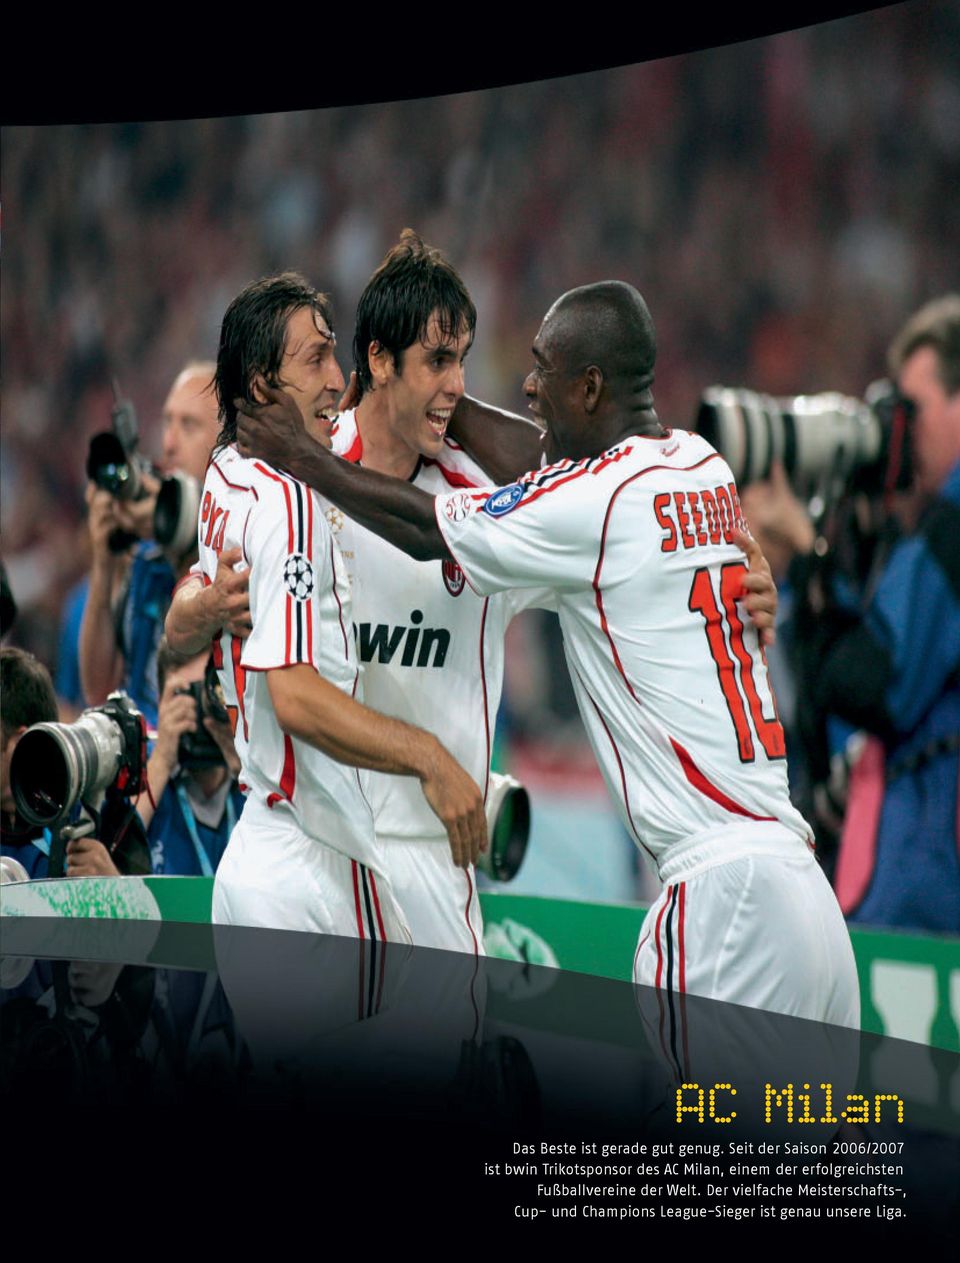 Milan, einem der erfolgreichsten Fußballvereine der Welt.